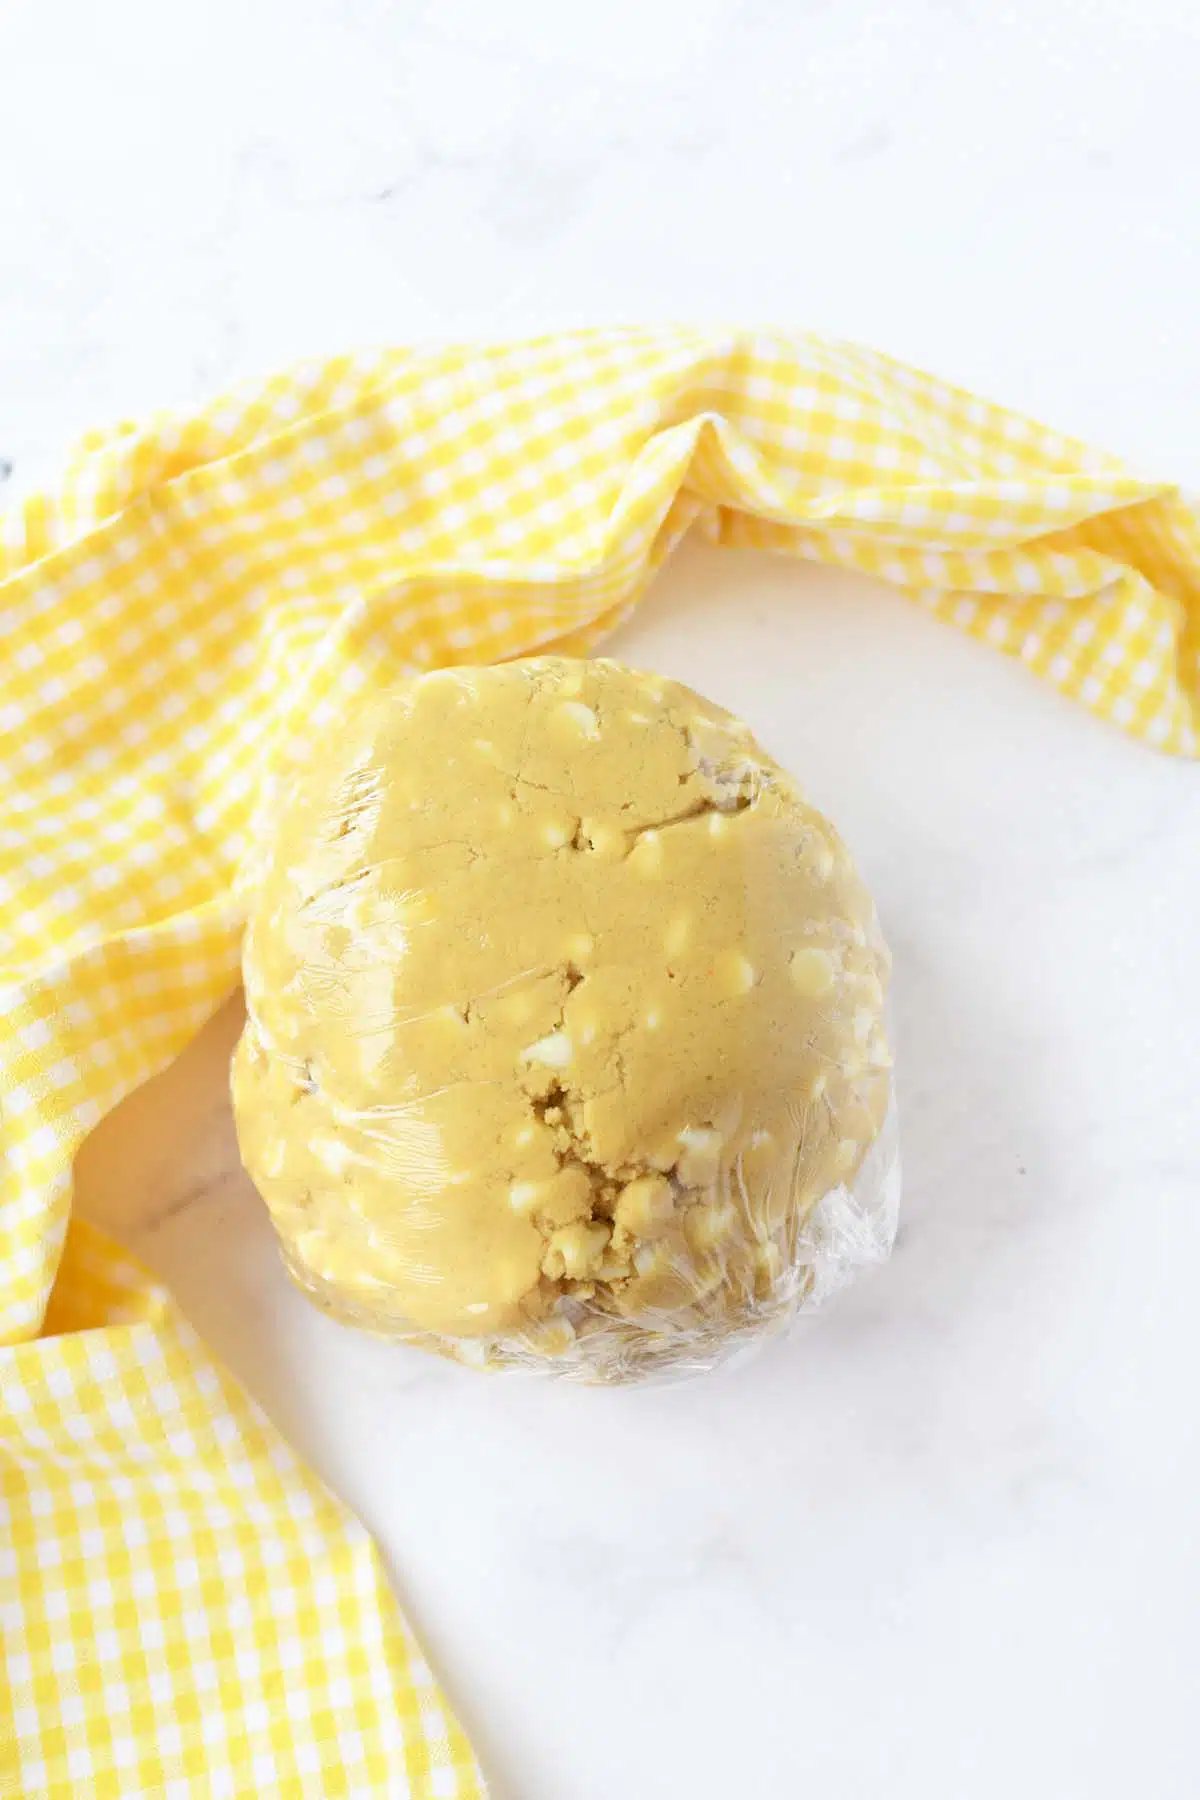 Lemon pudding dough in plastic wrap.